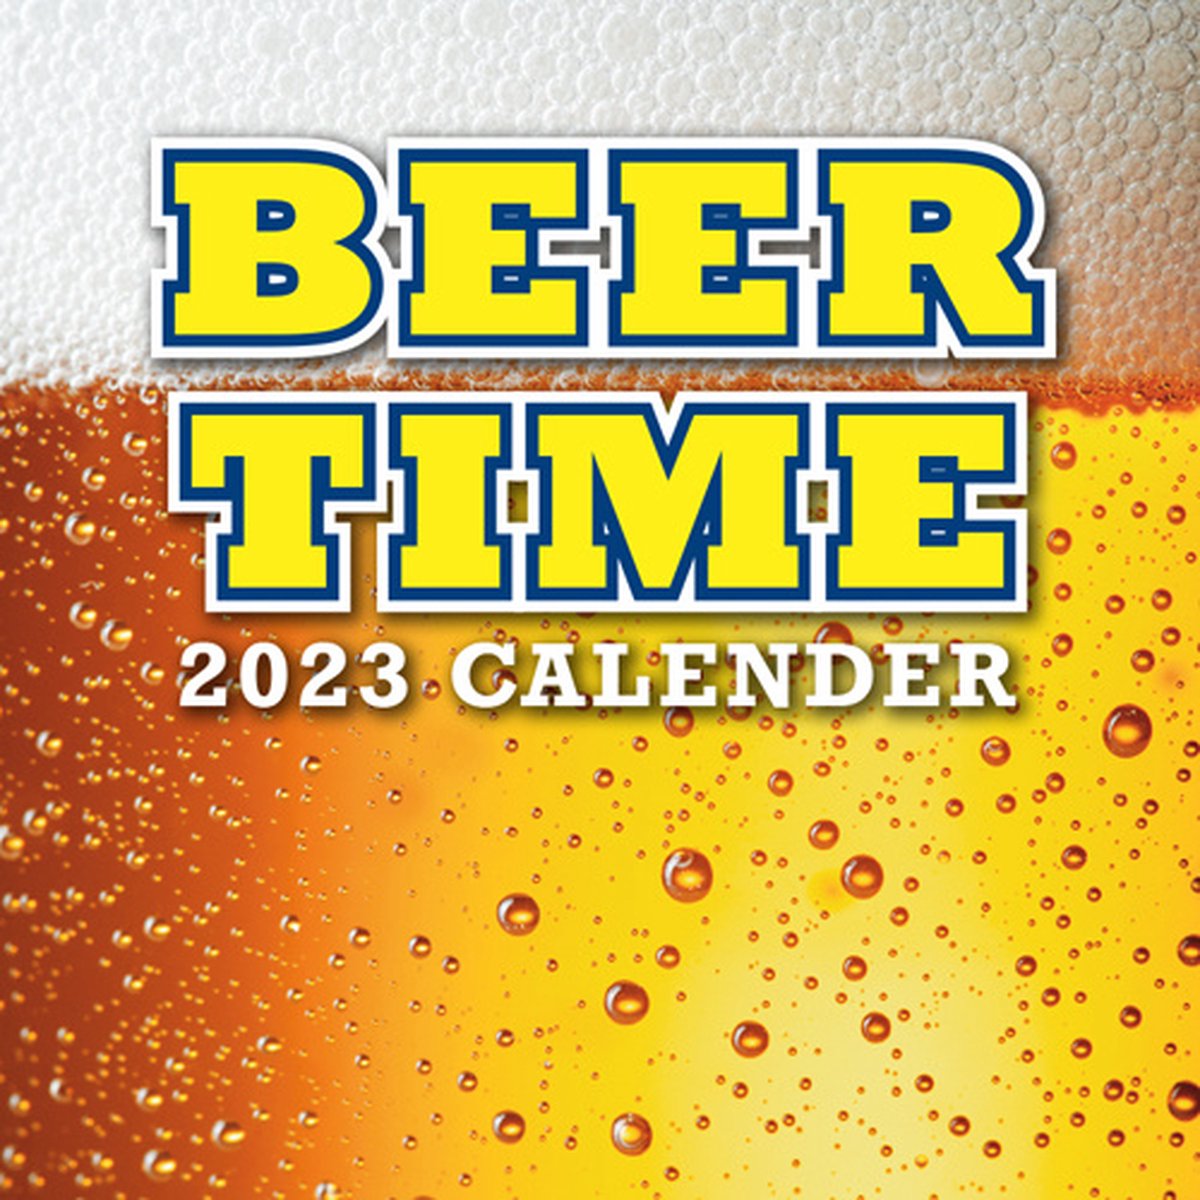 Beer Time Kalender 2023